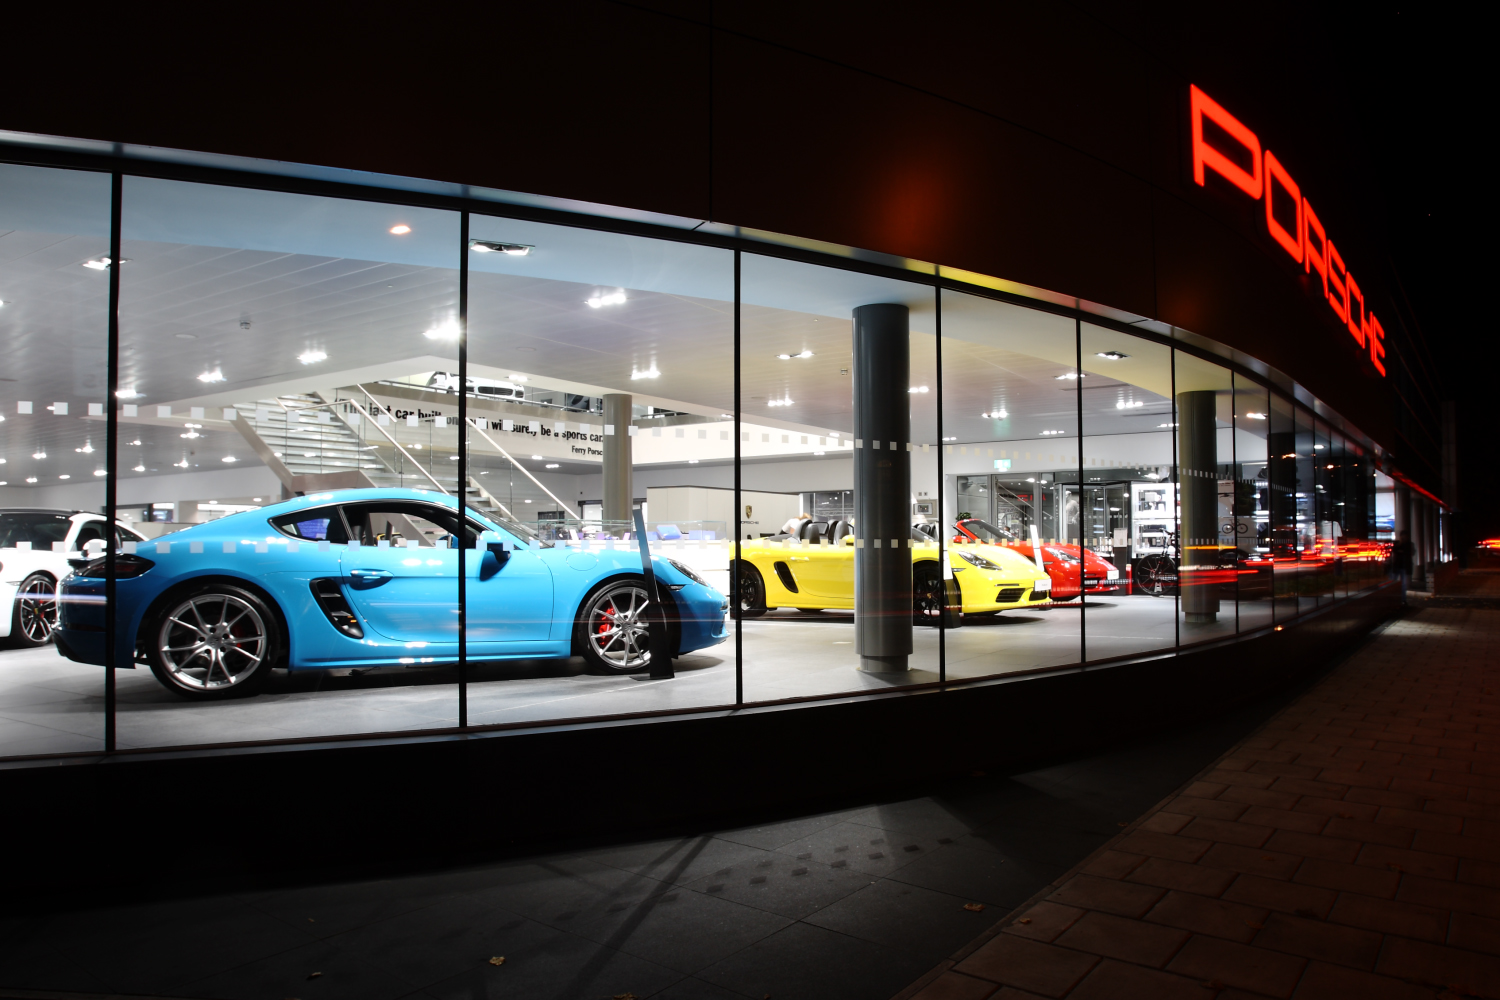 Porsche West London adds style with Encasement